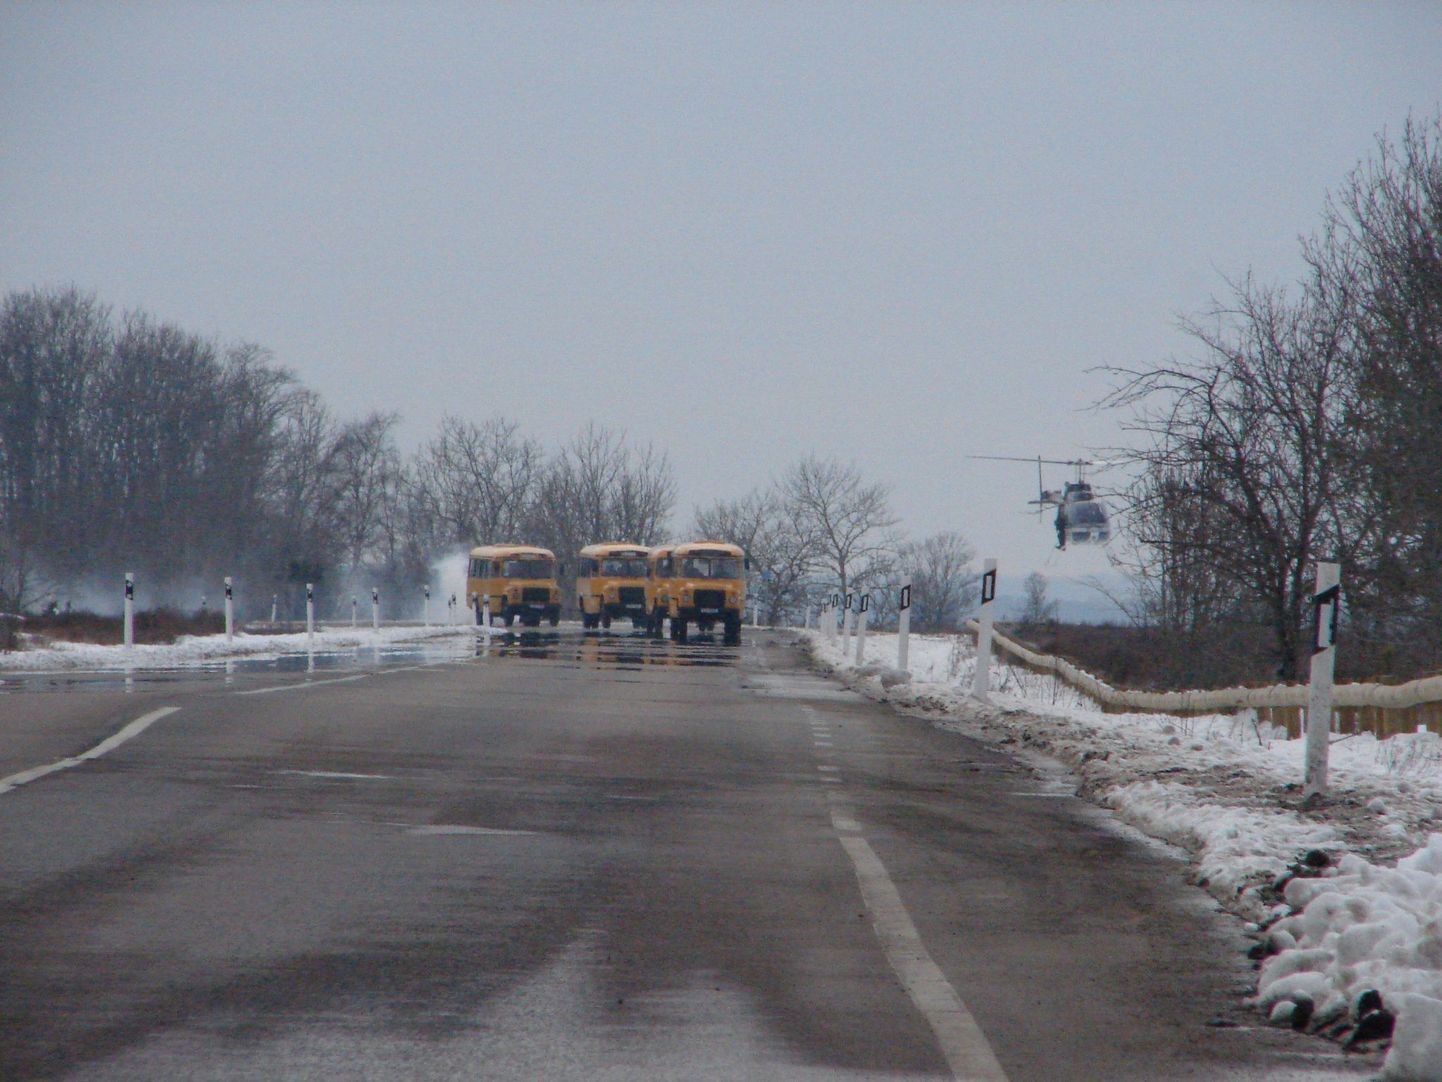 Nende nelja kollase bussiga sõidavadki õpilased õudset koolivaheaega veetma. Võtetel tuli kopterijuhil olla vägagi täpne.